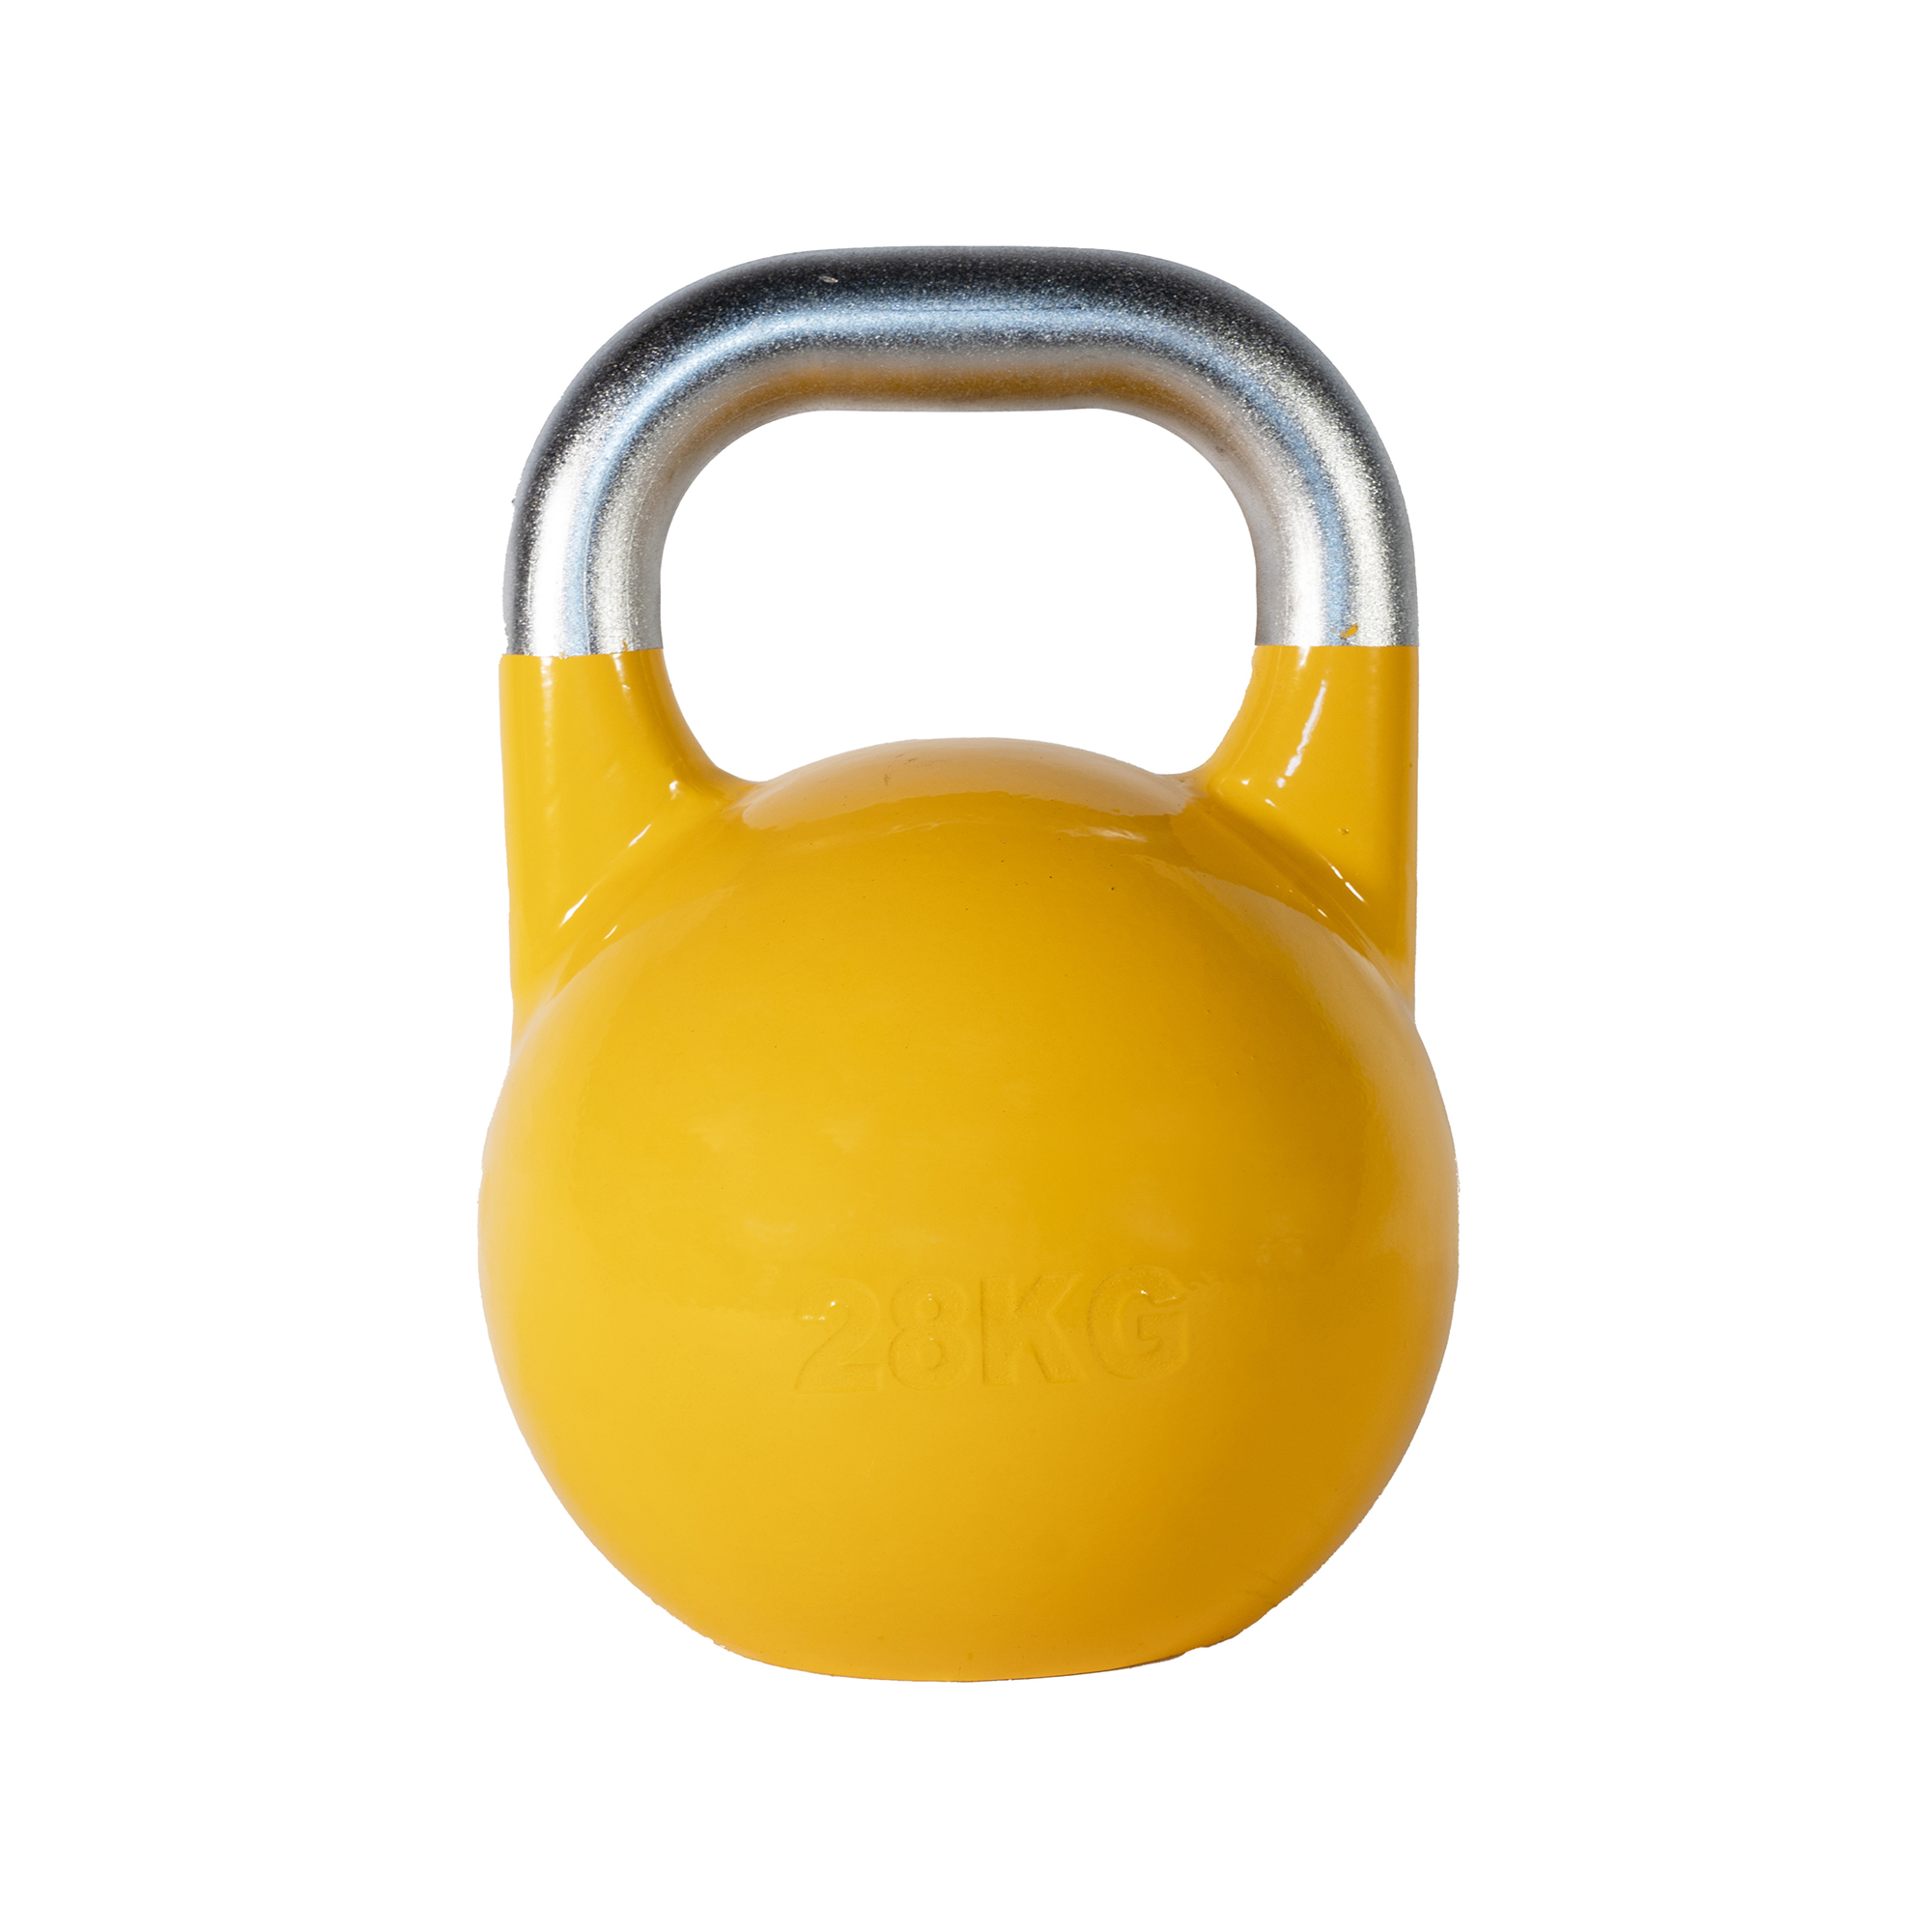 Brug SQ&SN Competition Kettlebell (28 kg) i støbejern. Udstyr til crossfit træning, styrketræning og funktionel træning til en forbedret oplevelse